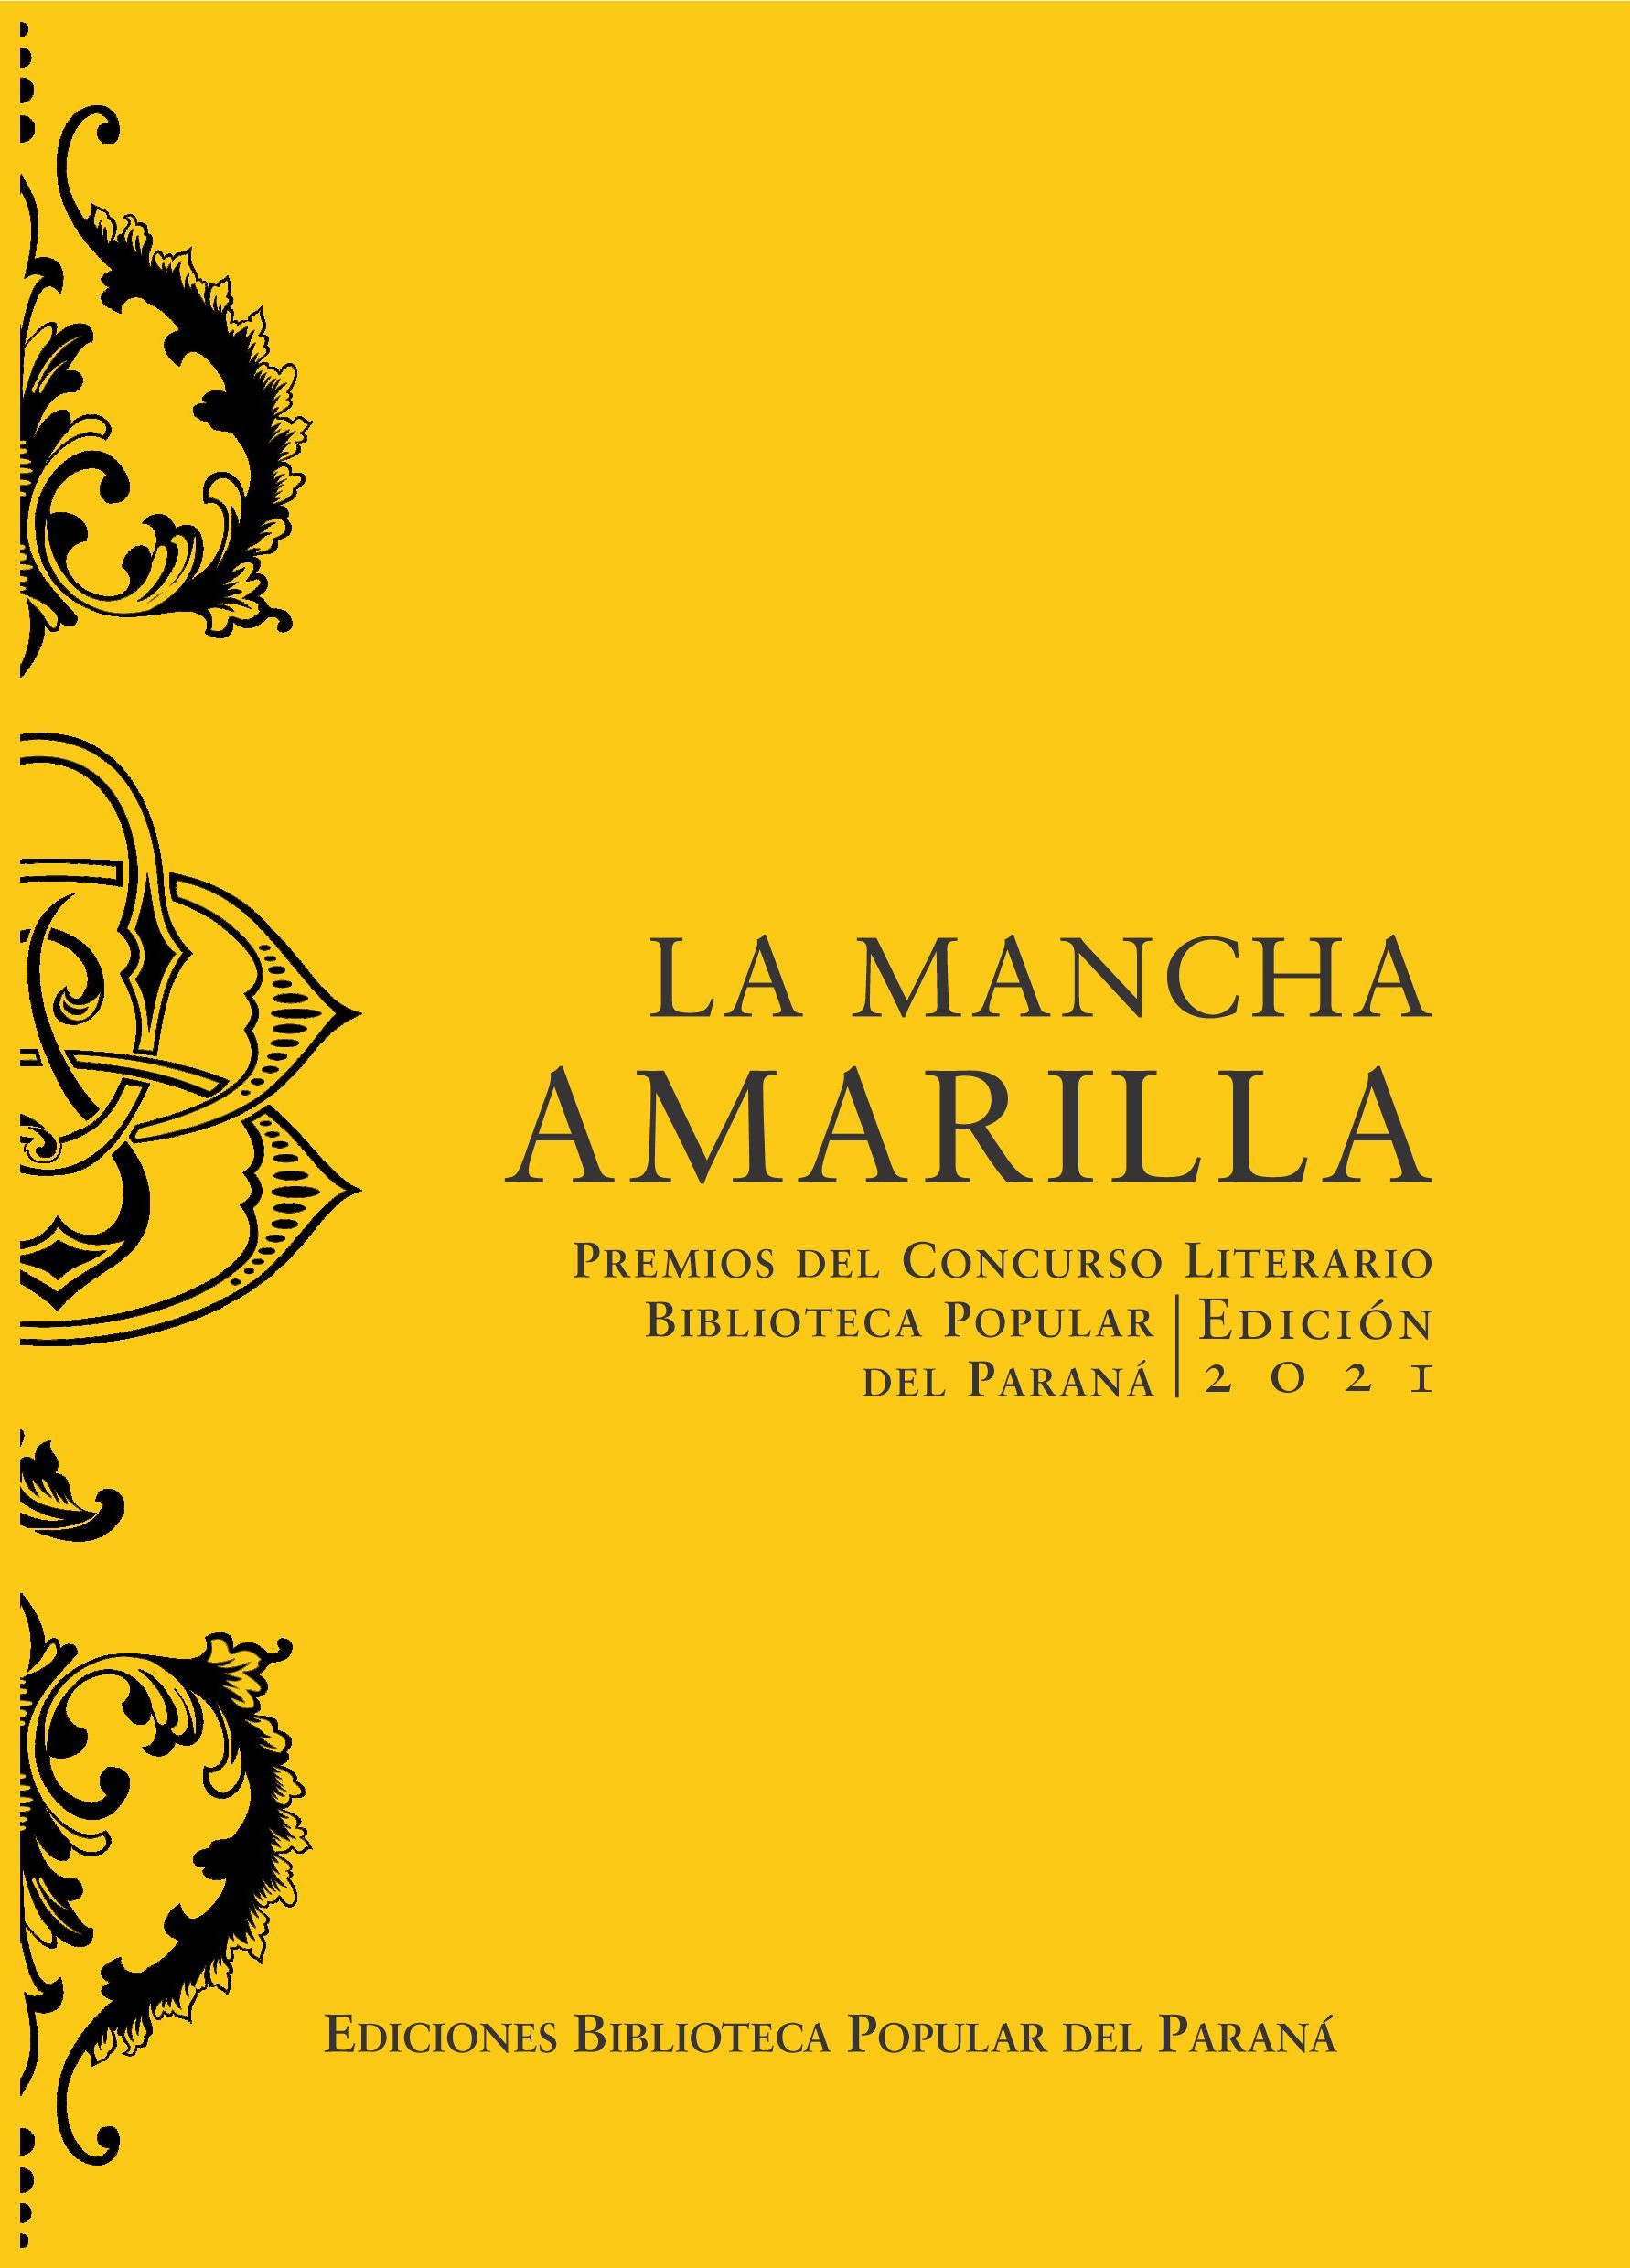 Tapa del libro de premios del Concurso Biblioteca Popular
                     del Paraná, Edición 2021